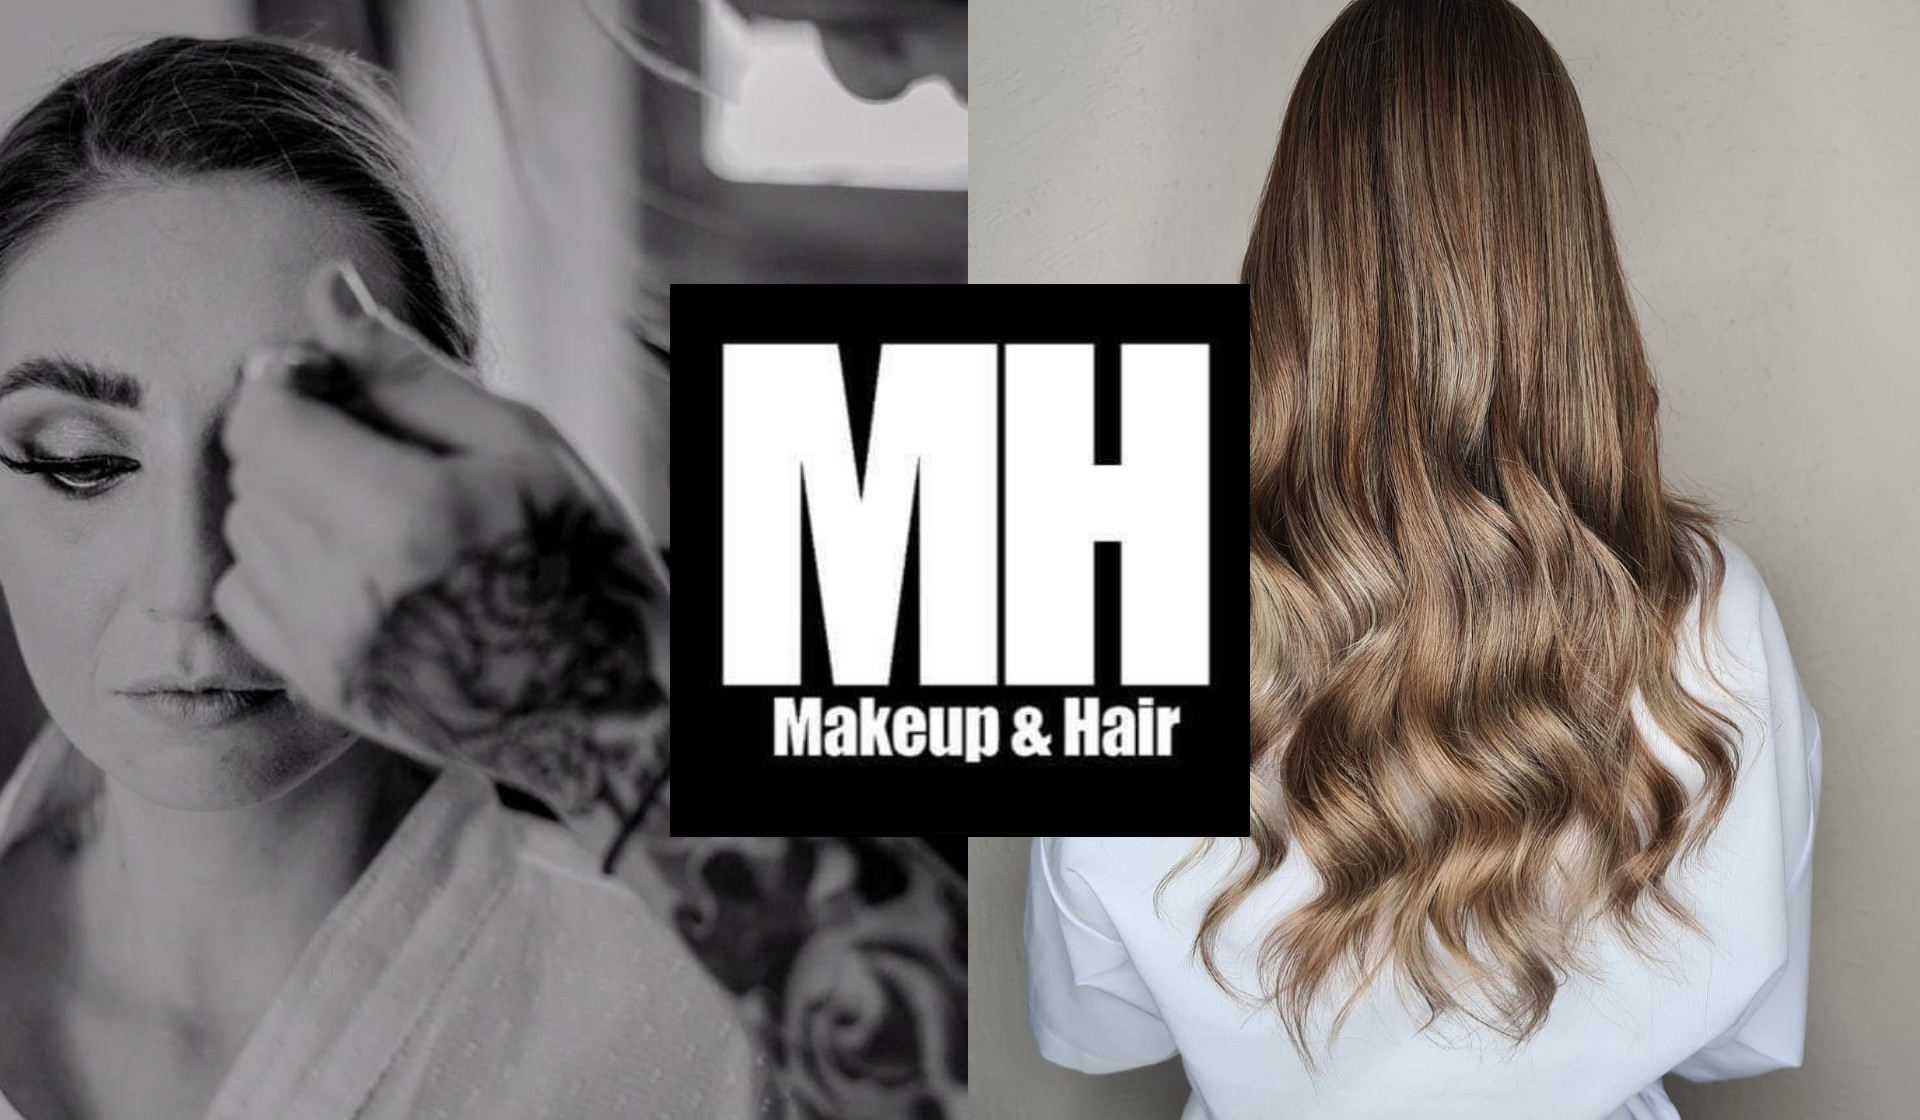 MH makeup & hair